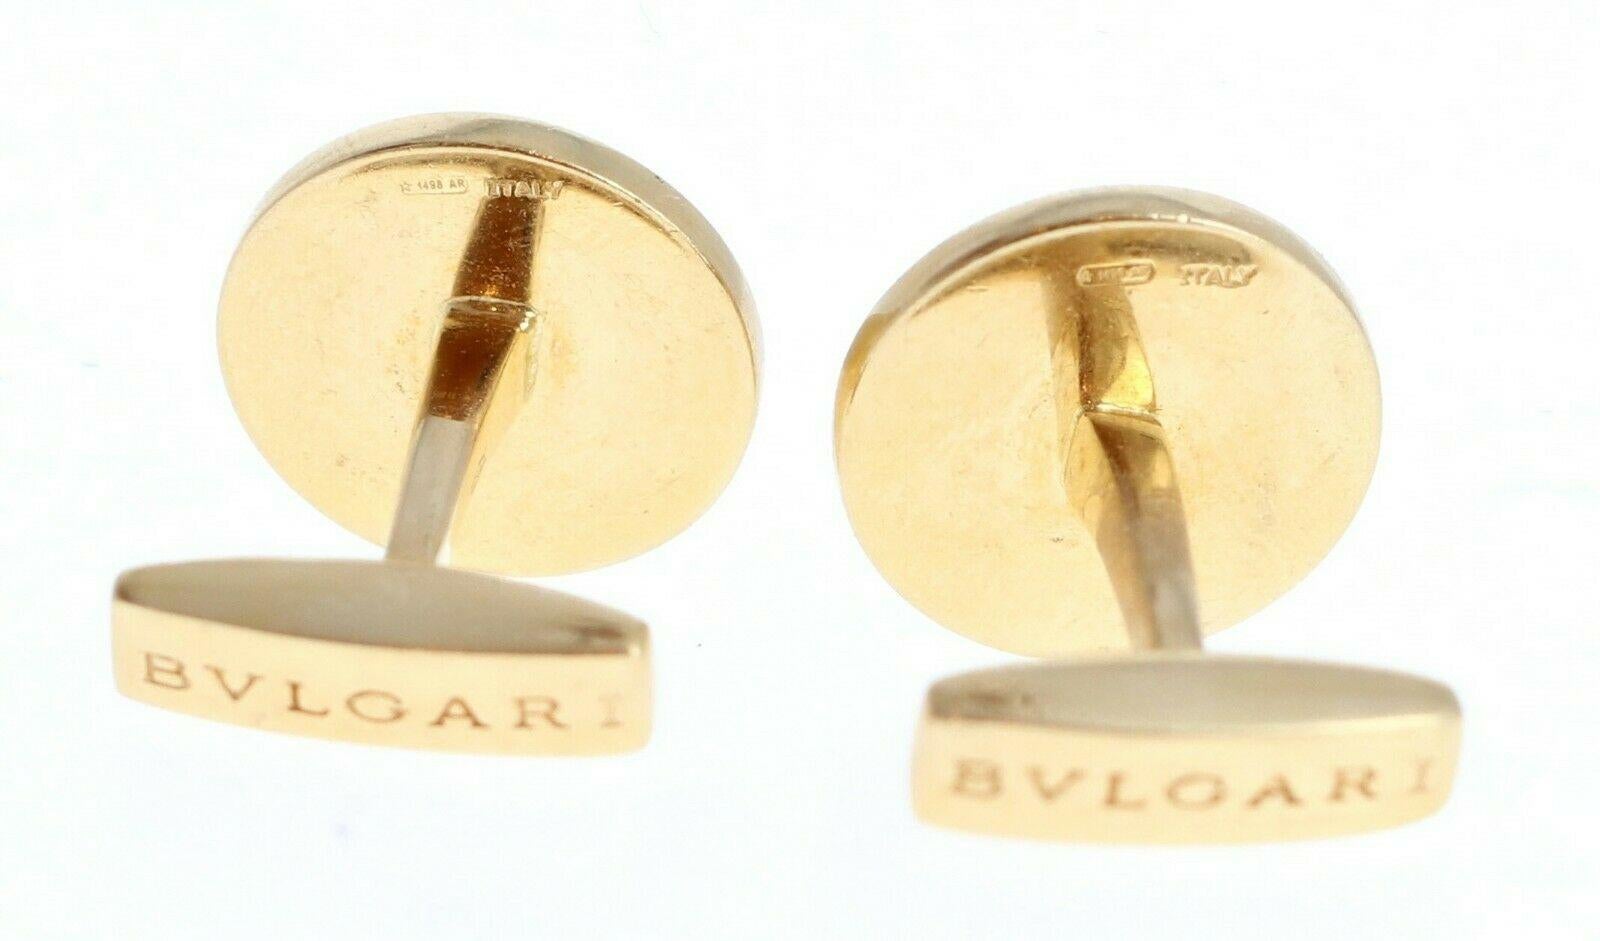 Bvlgari Bulgari 18k Yellow Gold & Diamond Cufflinks

For sale is a pair of Bvlgari 18k yellow gold and diamond cufflinks
 Perfect worn day or night.
 Get these stunning cufflinks now!


Metal: 18k yellow gold 
     
Hallmark: Bvlgari

Length: